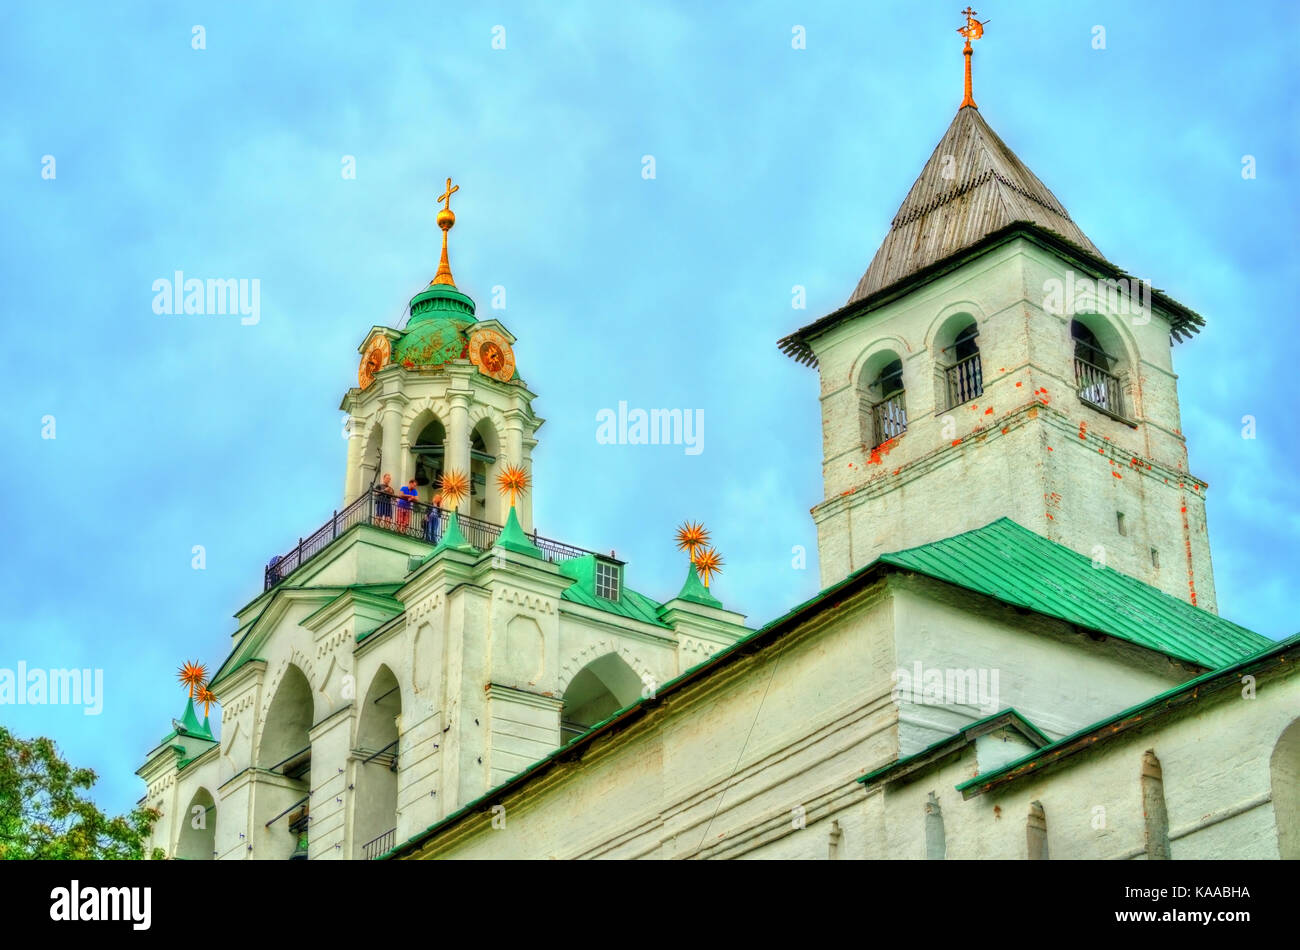 Spaso-Preobrazhensky or Transfiguration Monastery in Yaroslavl, Russia Stock Photo